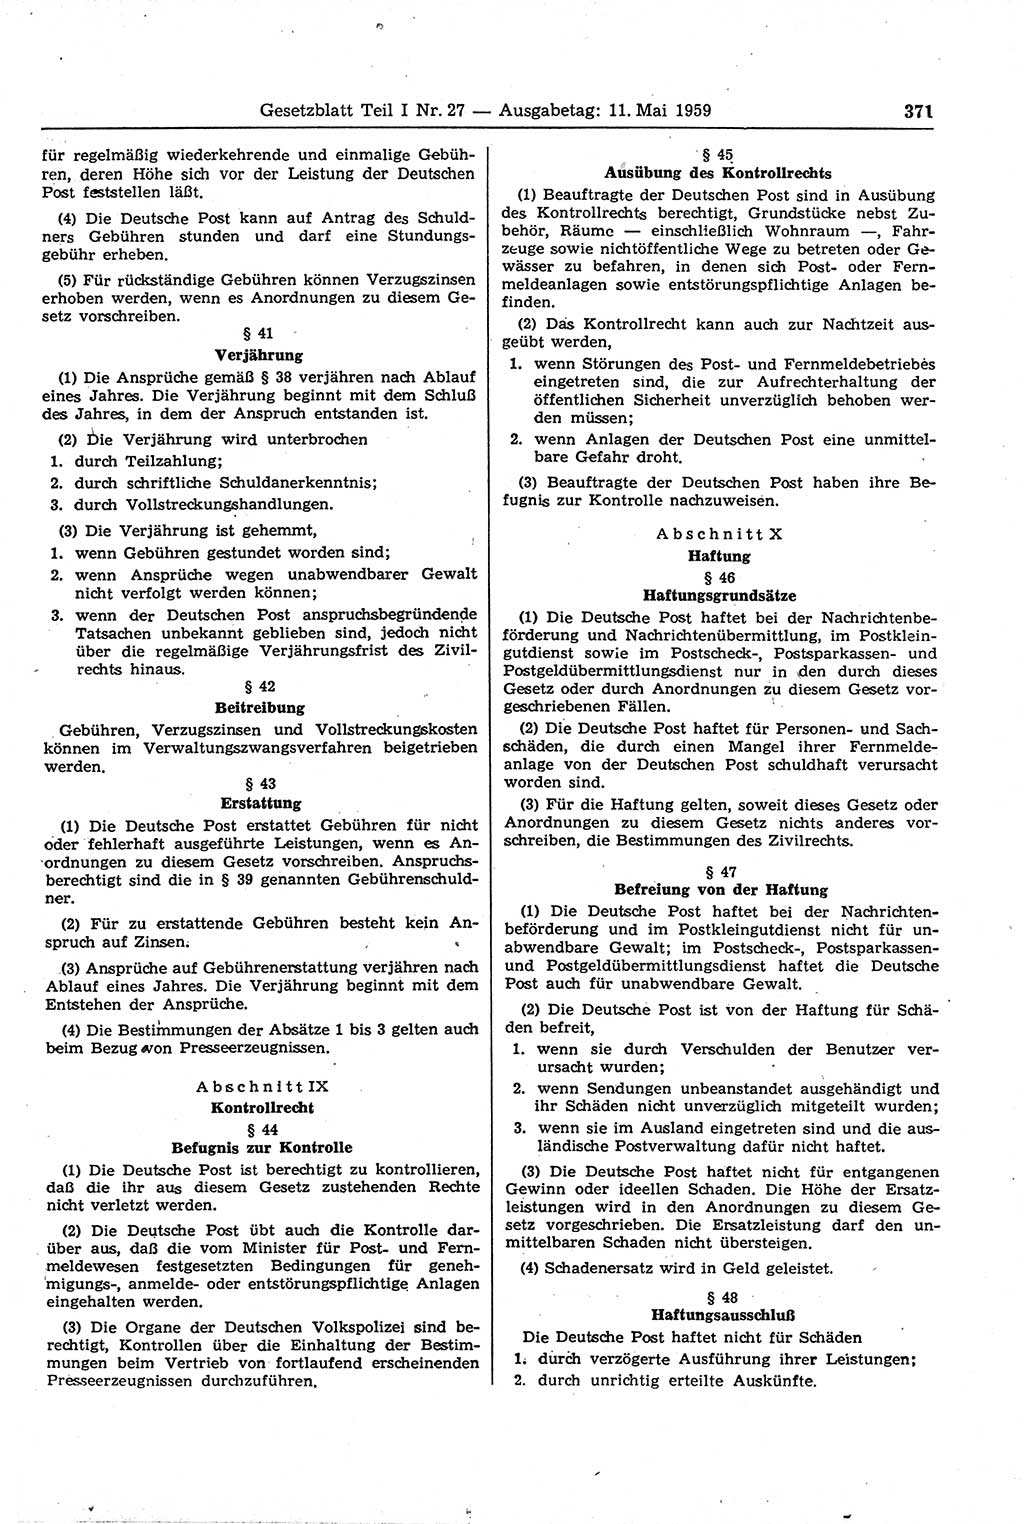 Gesetzblatt (GBl.) der Deutschen Demokratischen Republik (DDR) Teil Ⅰ 1959, Seite 371 (GBl. DDR Ⅰ 1959, S. 371)